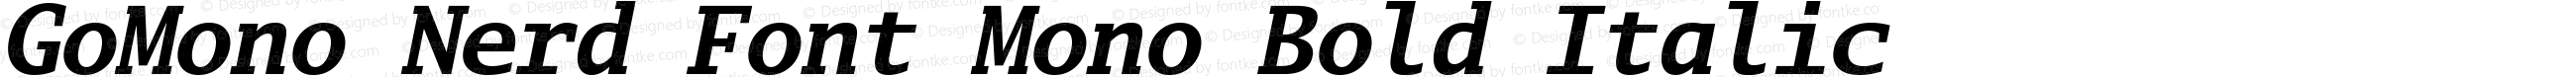 Go Mono Bold Italic Nerd Font Complete Mono